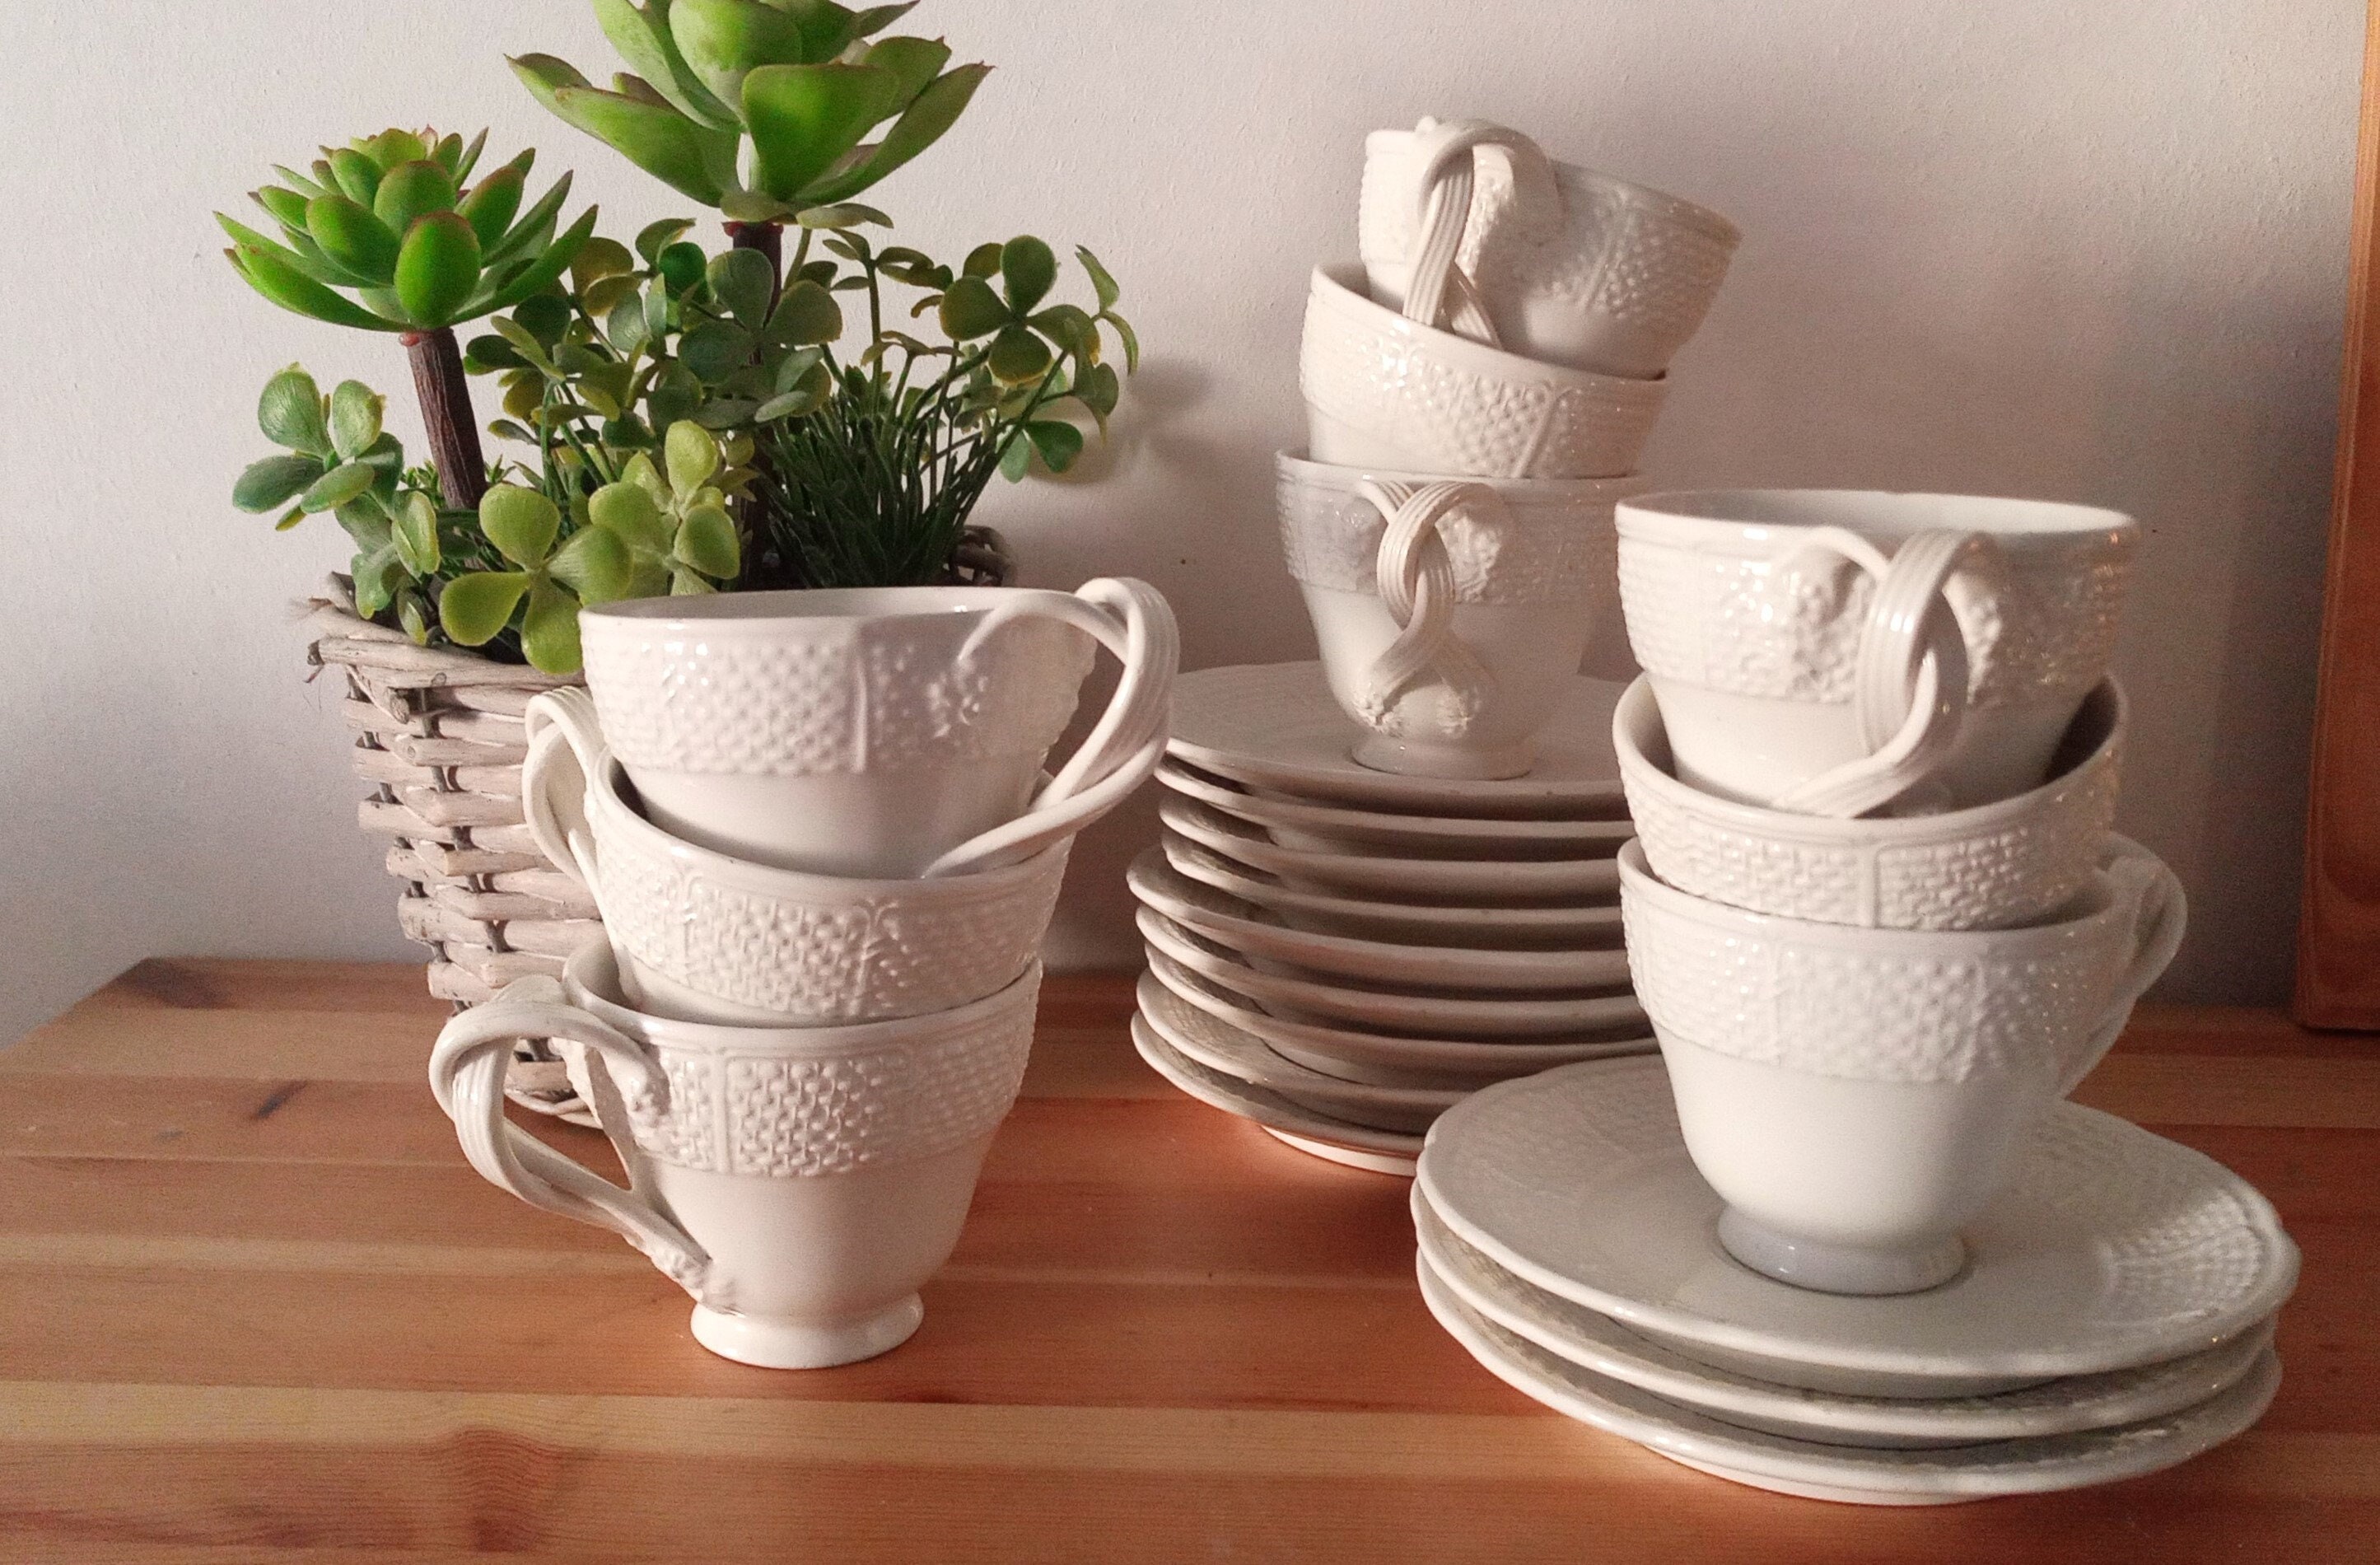 Offerta Ceramica Decoro Shabby A Coste Lavabile In L